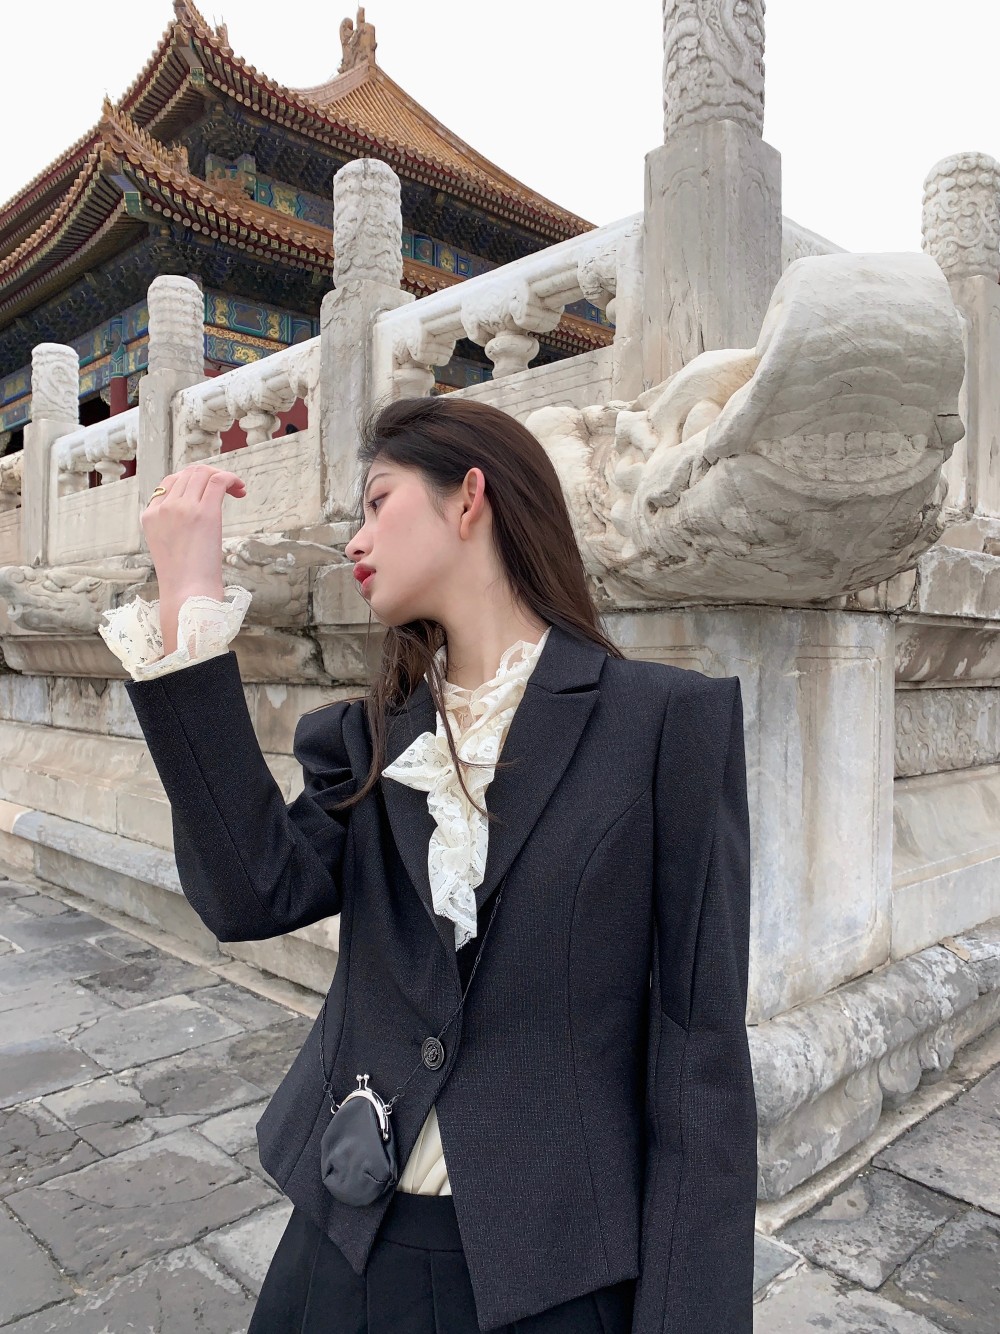 中国 穿搭 日常 壁纸 女头 头像 自拍 对镜拍 美女 微博搬运 拍照姿势